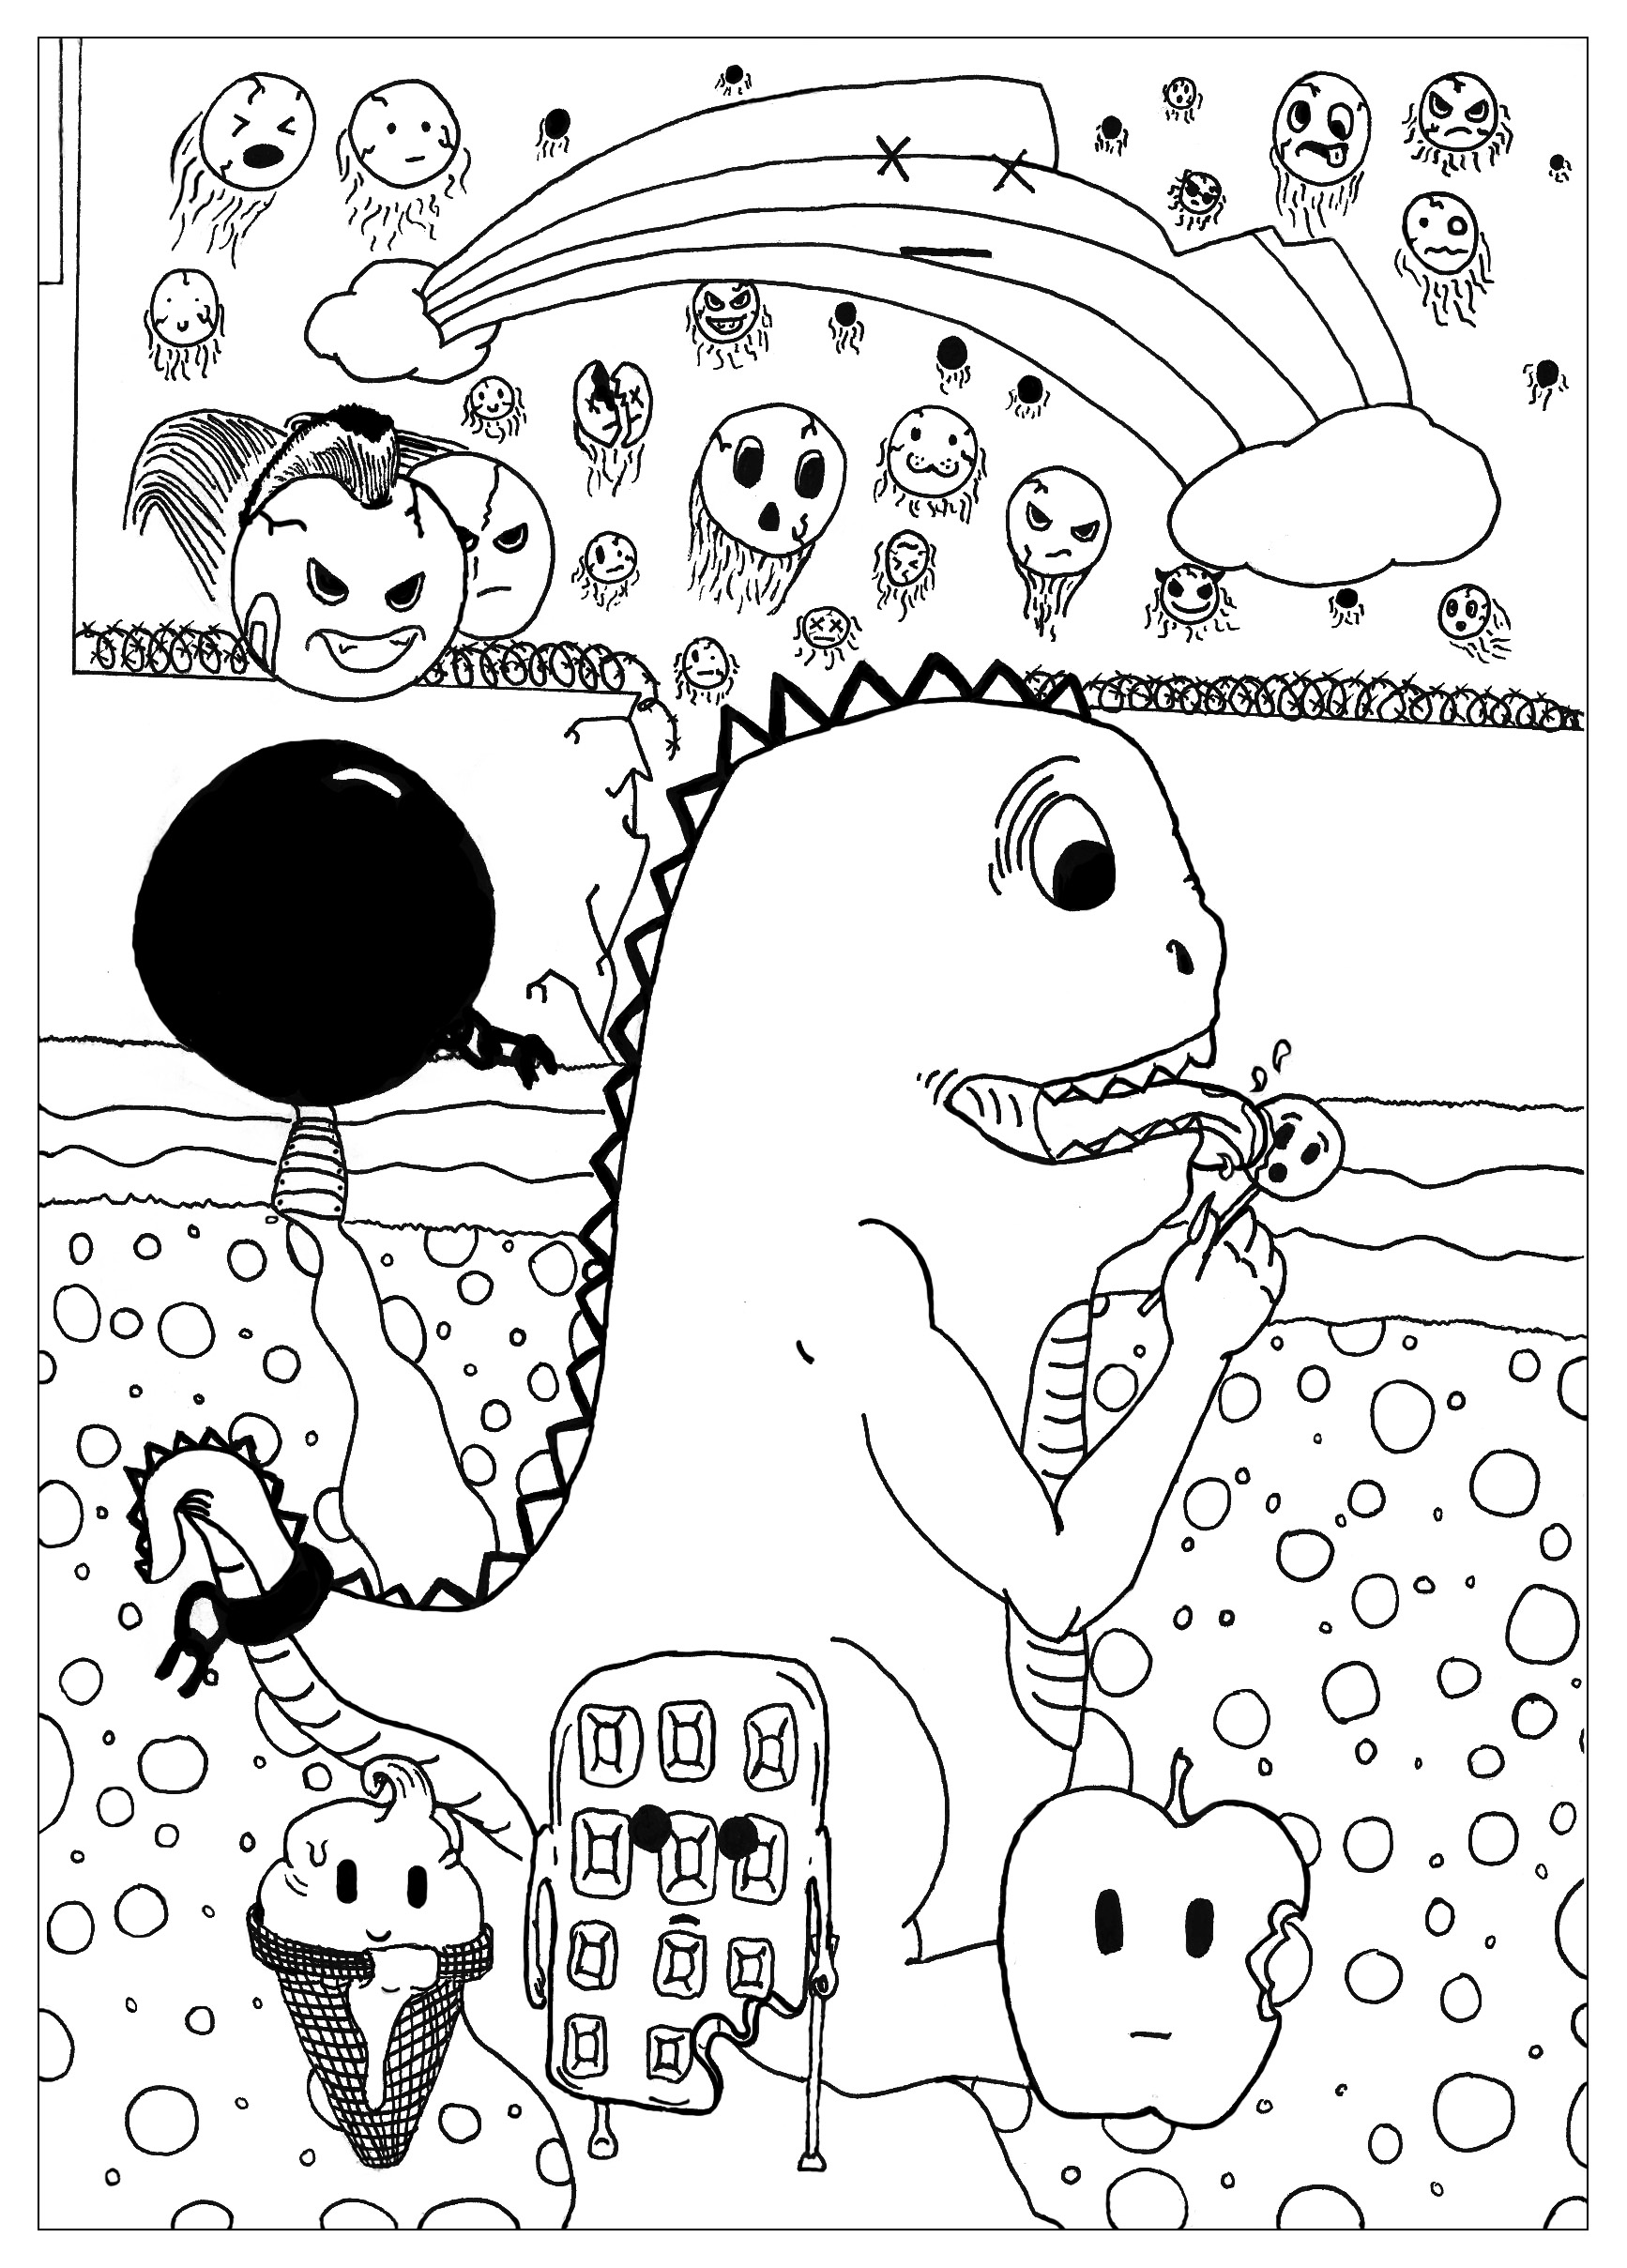 Colorear para adultos : Doodle art / Doodling - 31